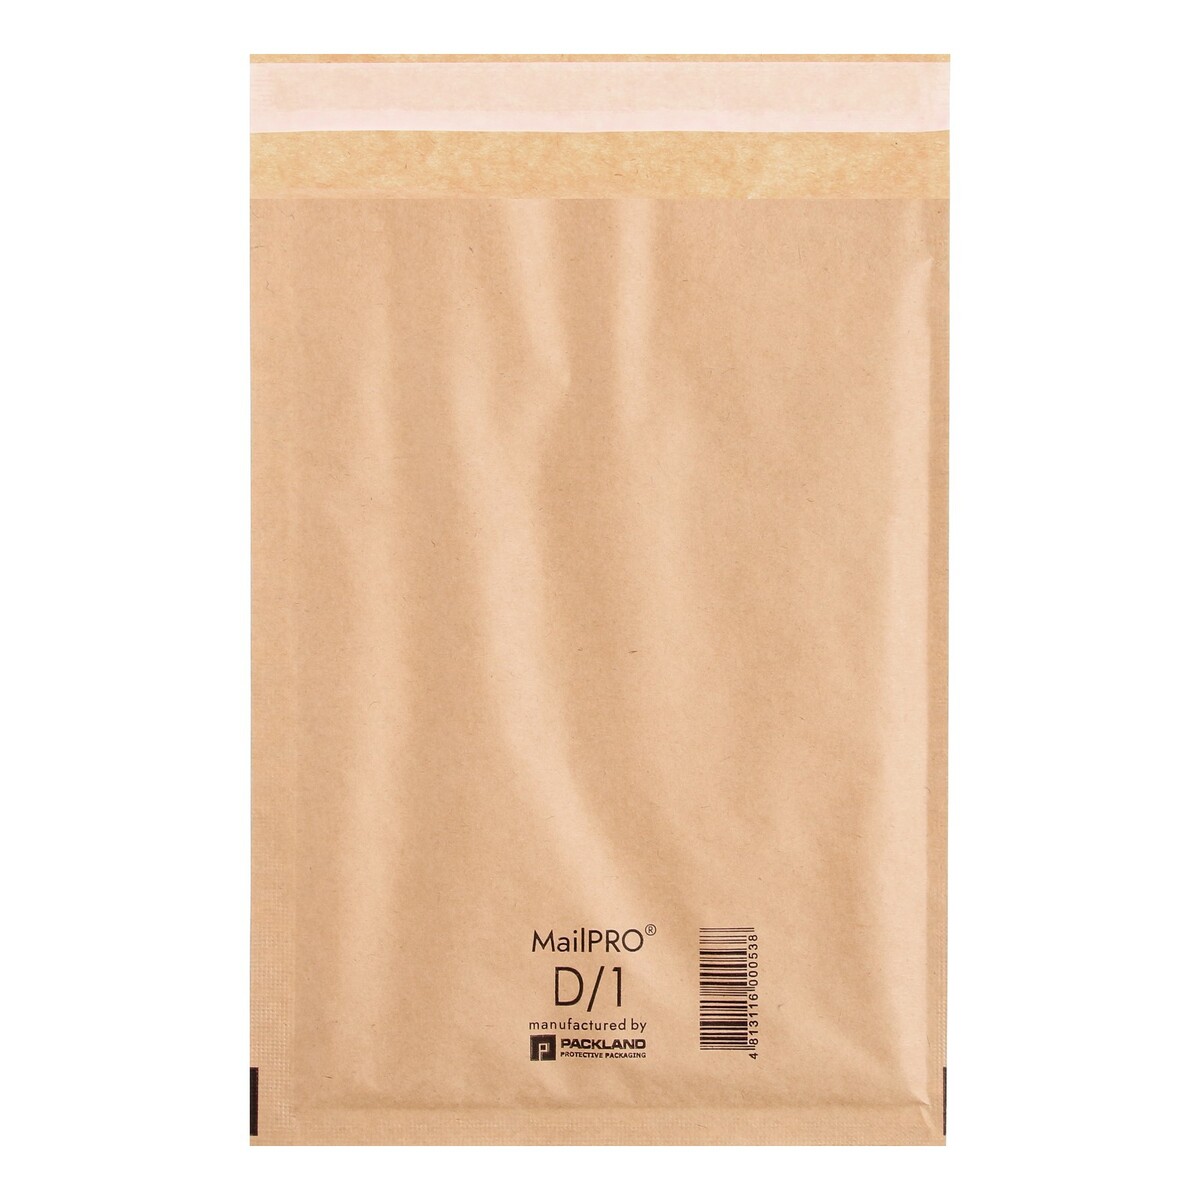 Крафт-конверт с воздушно-пузырьковой пленкой mailpro d/1, 18 х 26 см, kraft конверт антимоскитный gro серая полоска 6 18мес